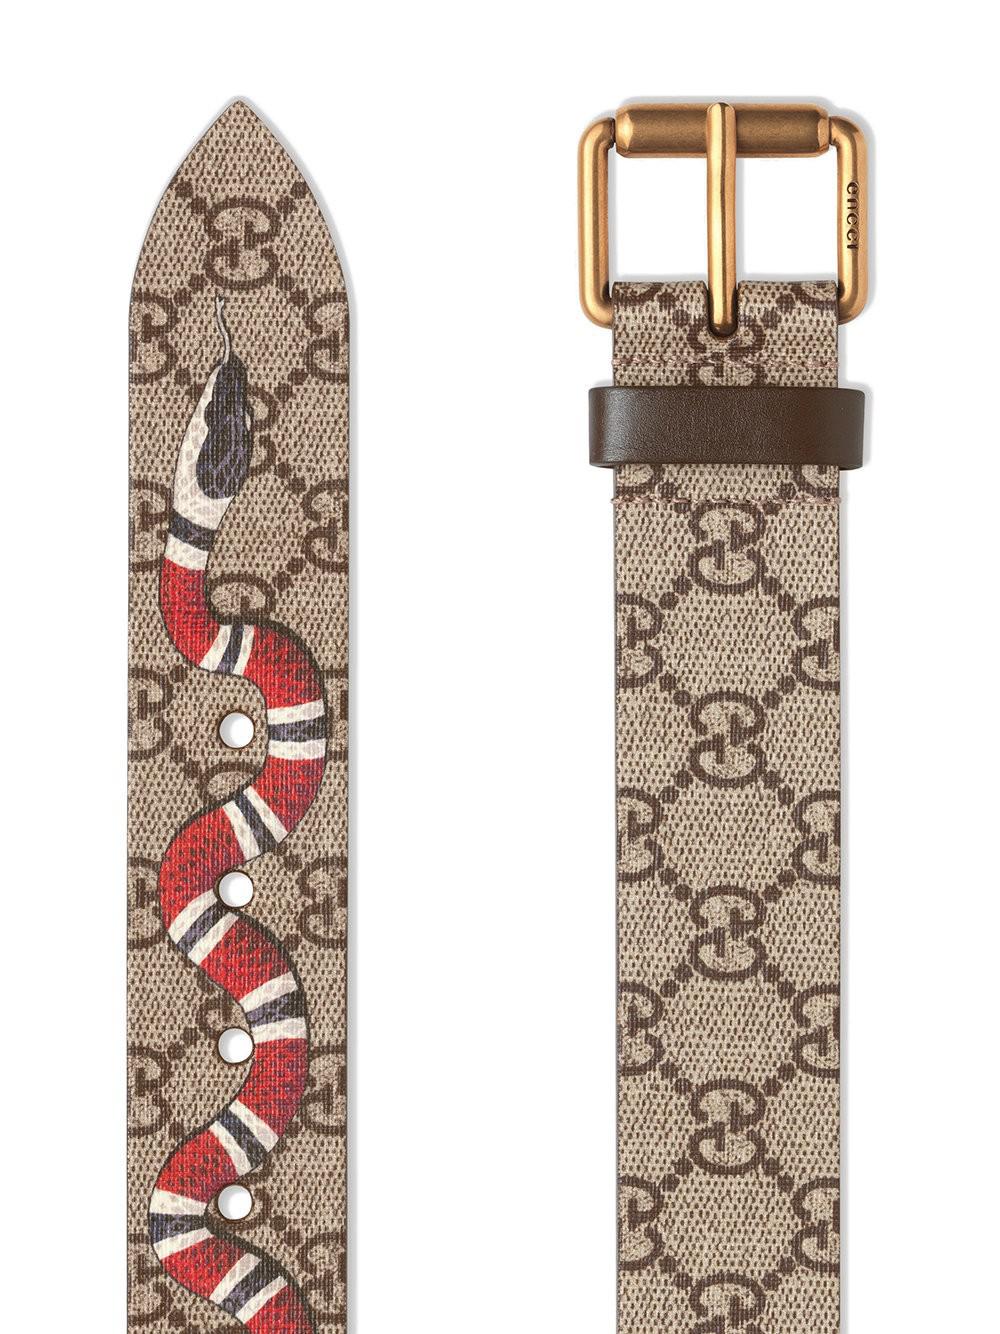 Gucci Snake Print Gg Supreme Belt in Natural for Men - Lyst